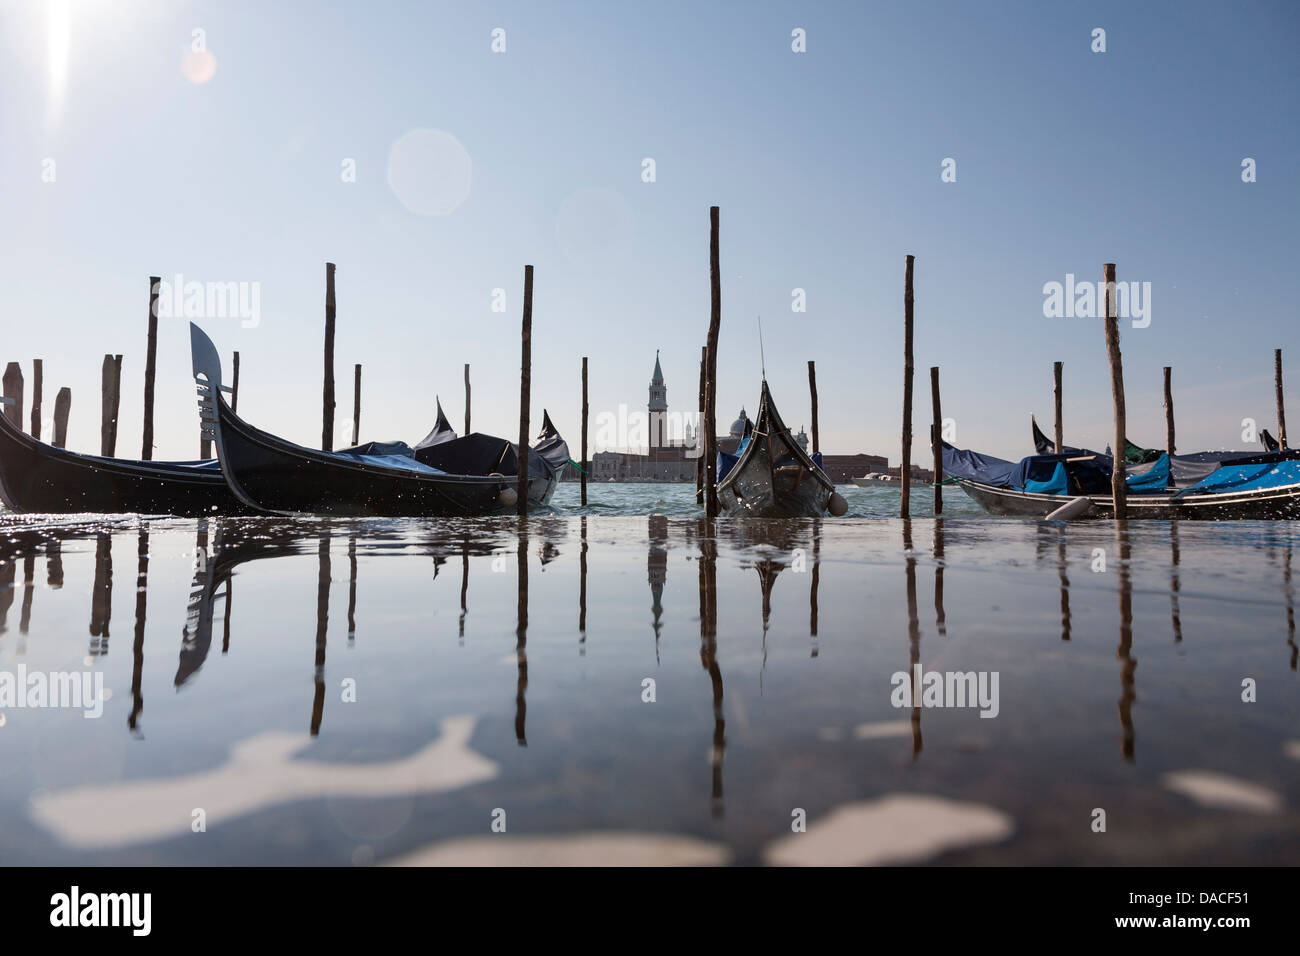 Las góndolas con reflexión y salpicaduras de agua, Venecia, Italia Foto de stock